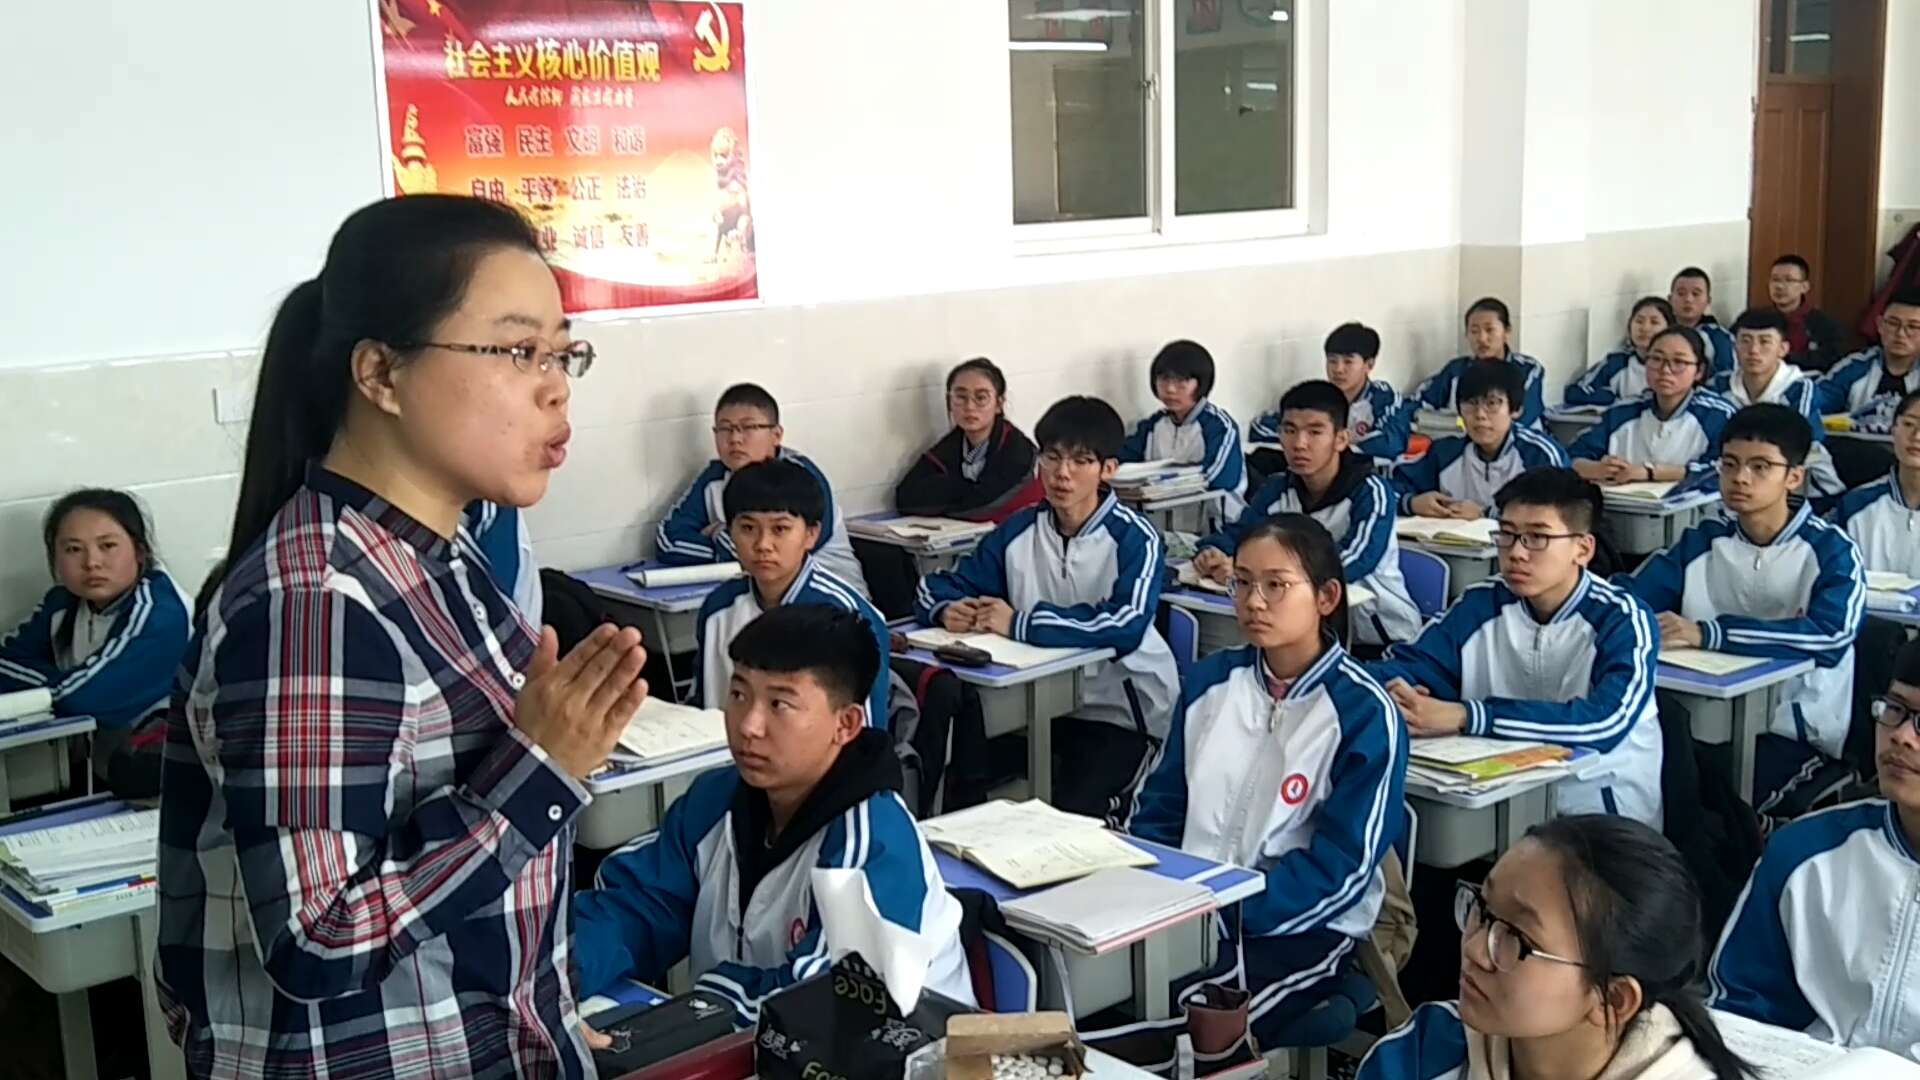 哈尔滨市双城区兆麟中学教师张敏"开挂"式提问 学生:上课像打仗